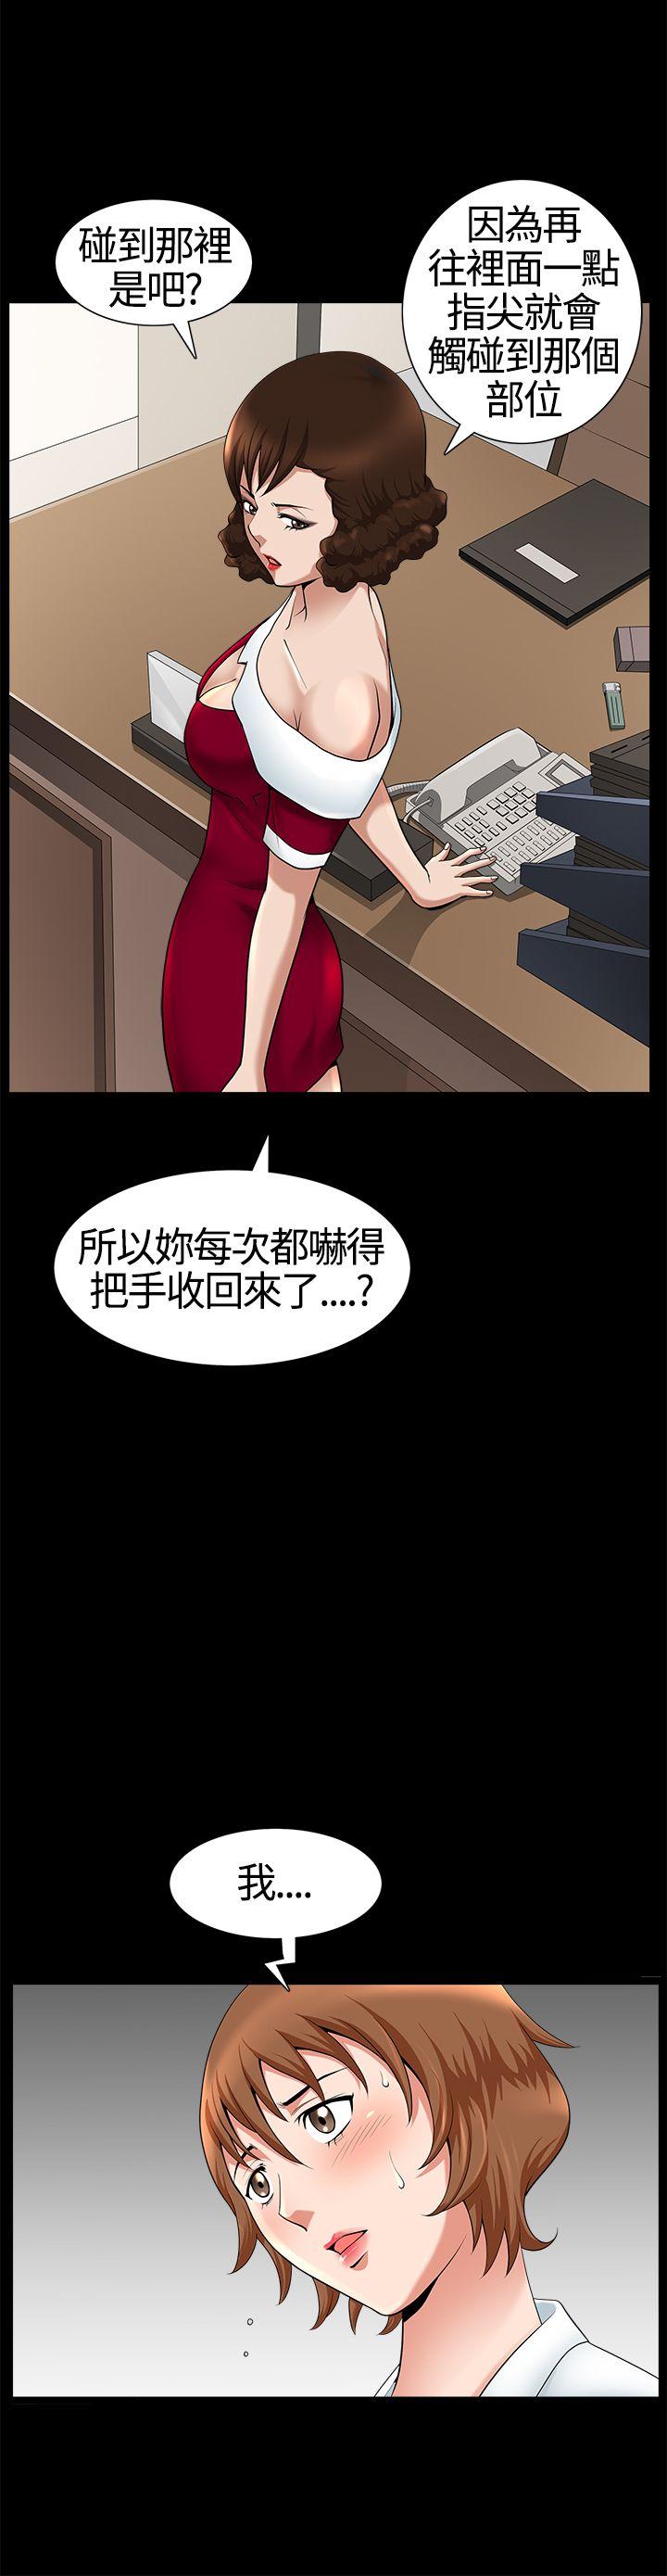 韩国污漫画 人妻性解放3:粗糙的手 第18话 27